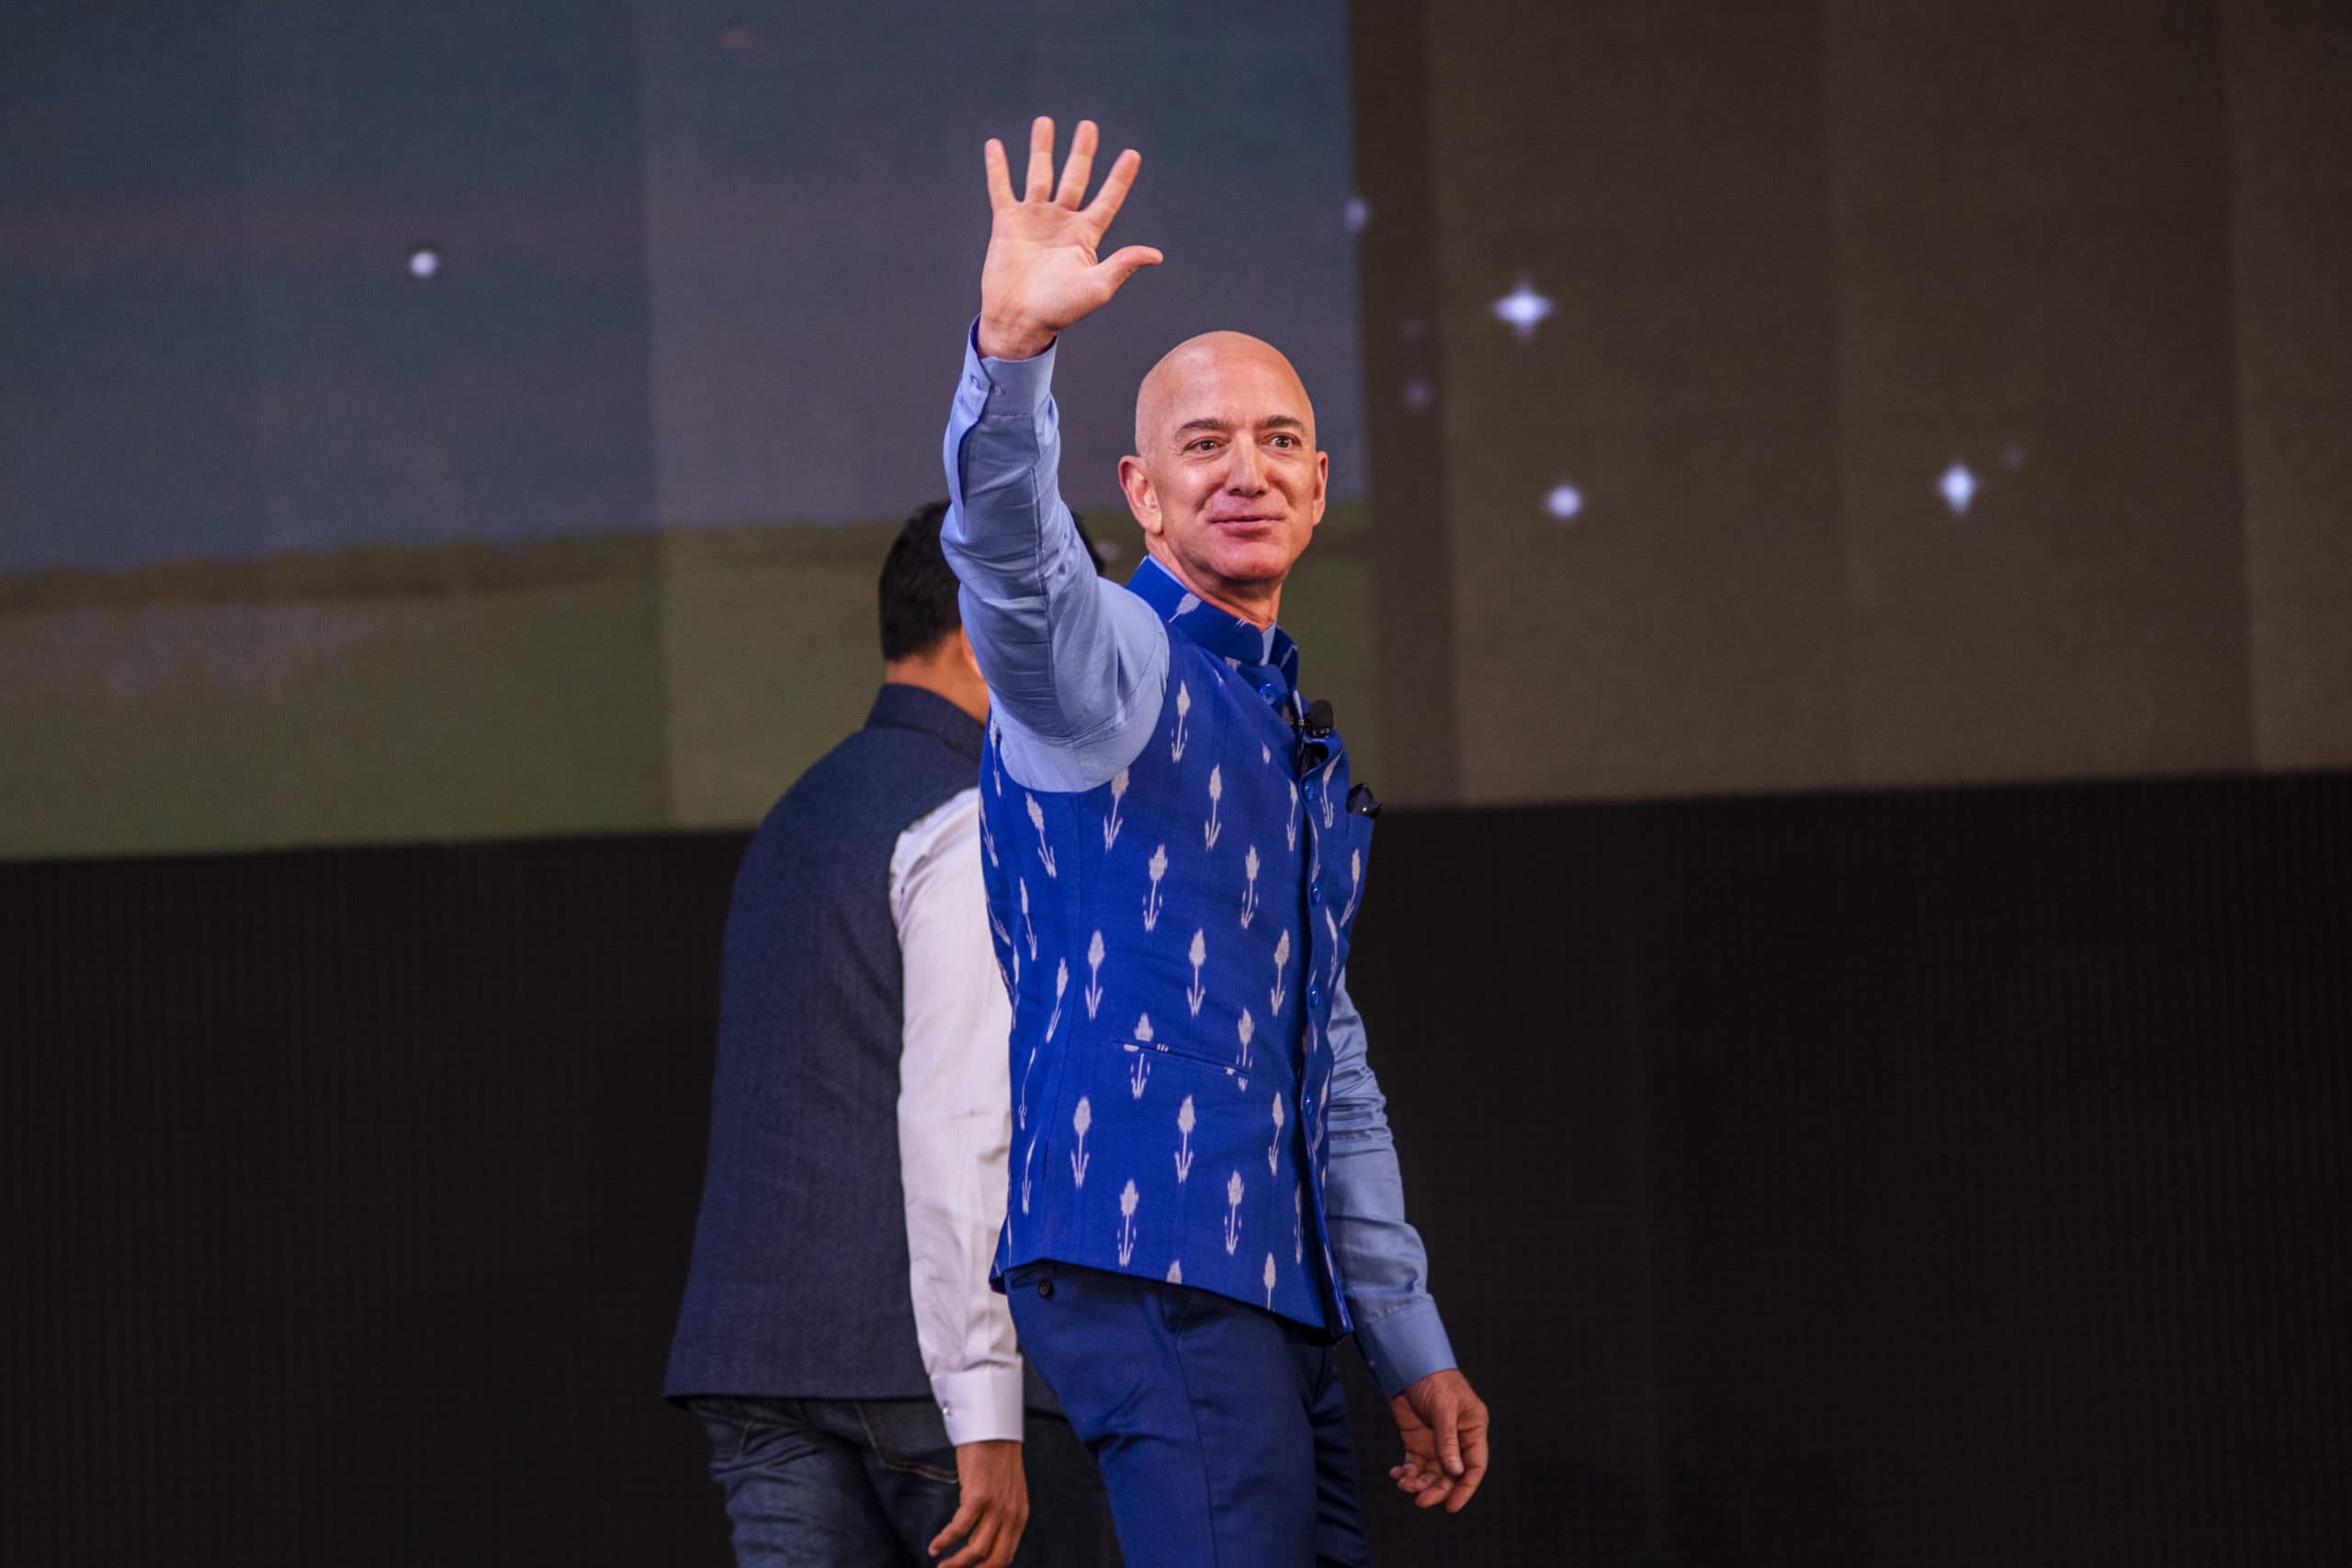 Amazon CEO Jeff Bezos Attends Amazon’s Annual Smbhav Event In Delhi